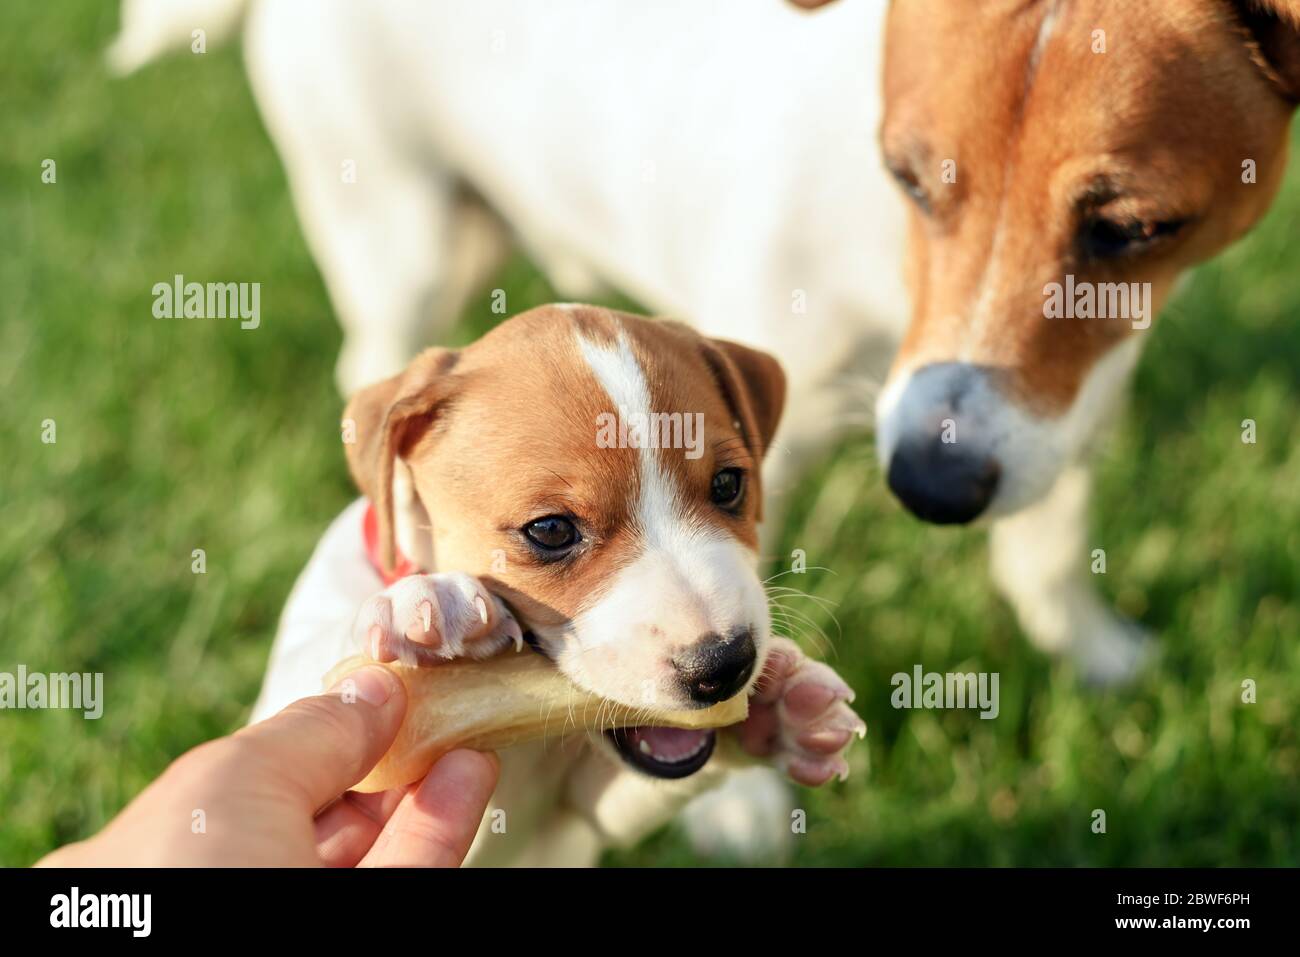 Ein kleiner weißer Hund Welpe züchtet Jack Russel Terrier mit seinem Vater und dem ersten Knochen auf grünem Rasen. Hunde und Tierfotografie Stockfoto